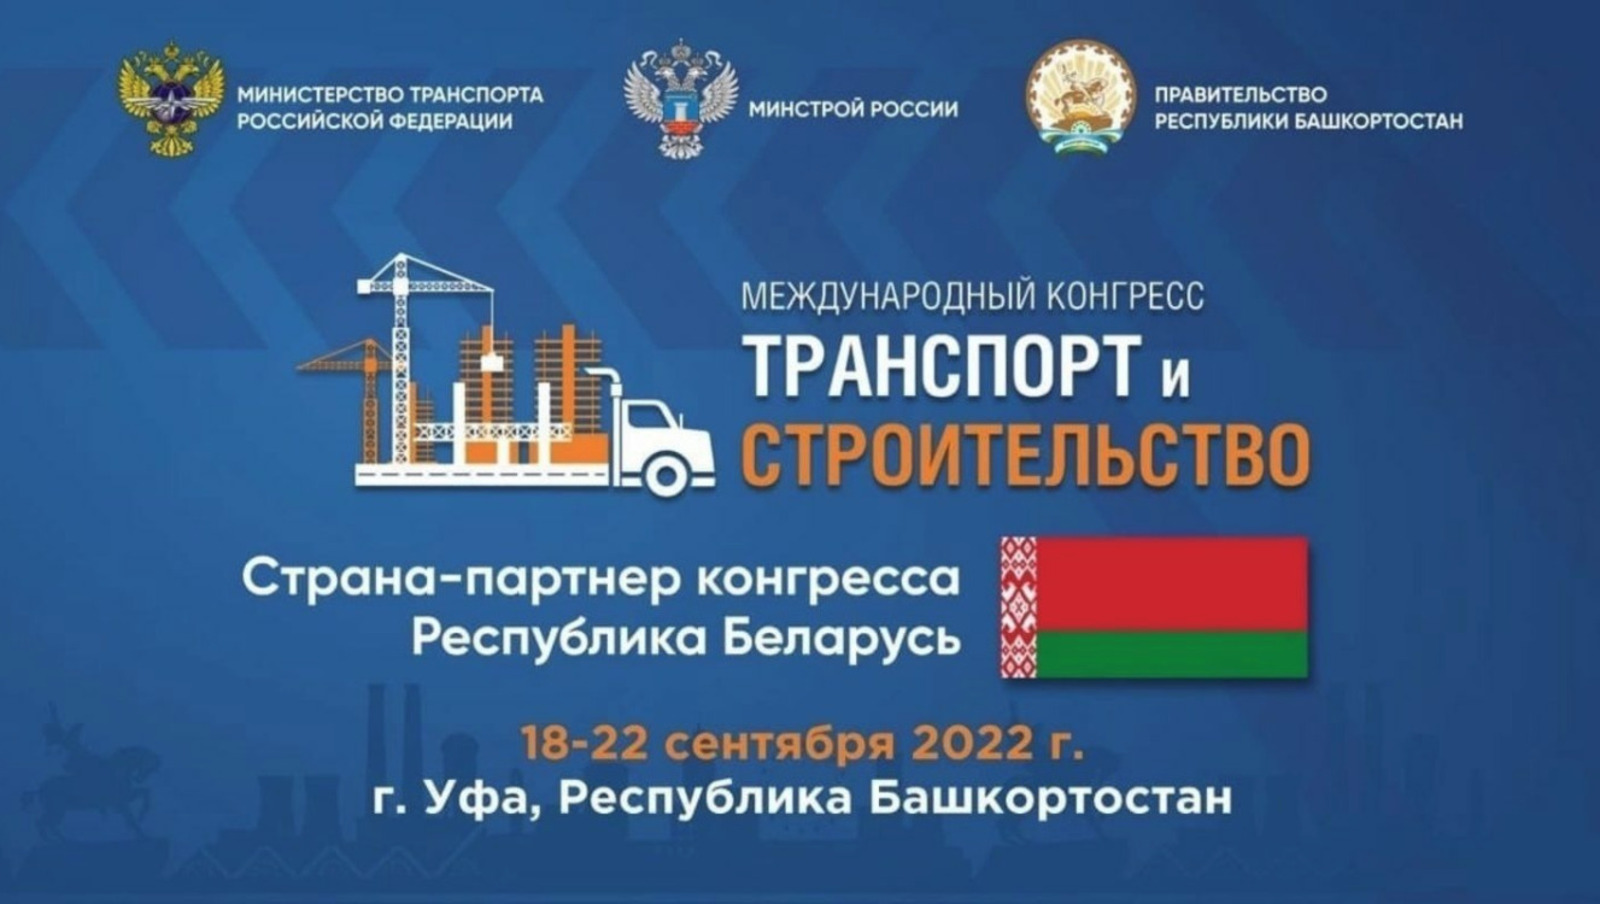 Впервые в Уфе пройдет Всероссийский конкурс профессионального мастерства «Лучший водитель грузовика»